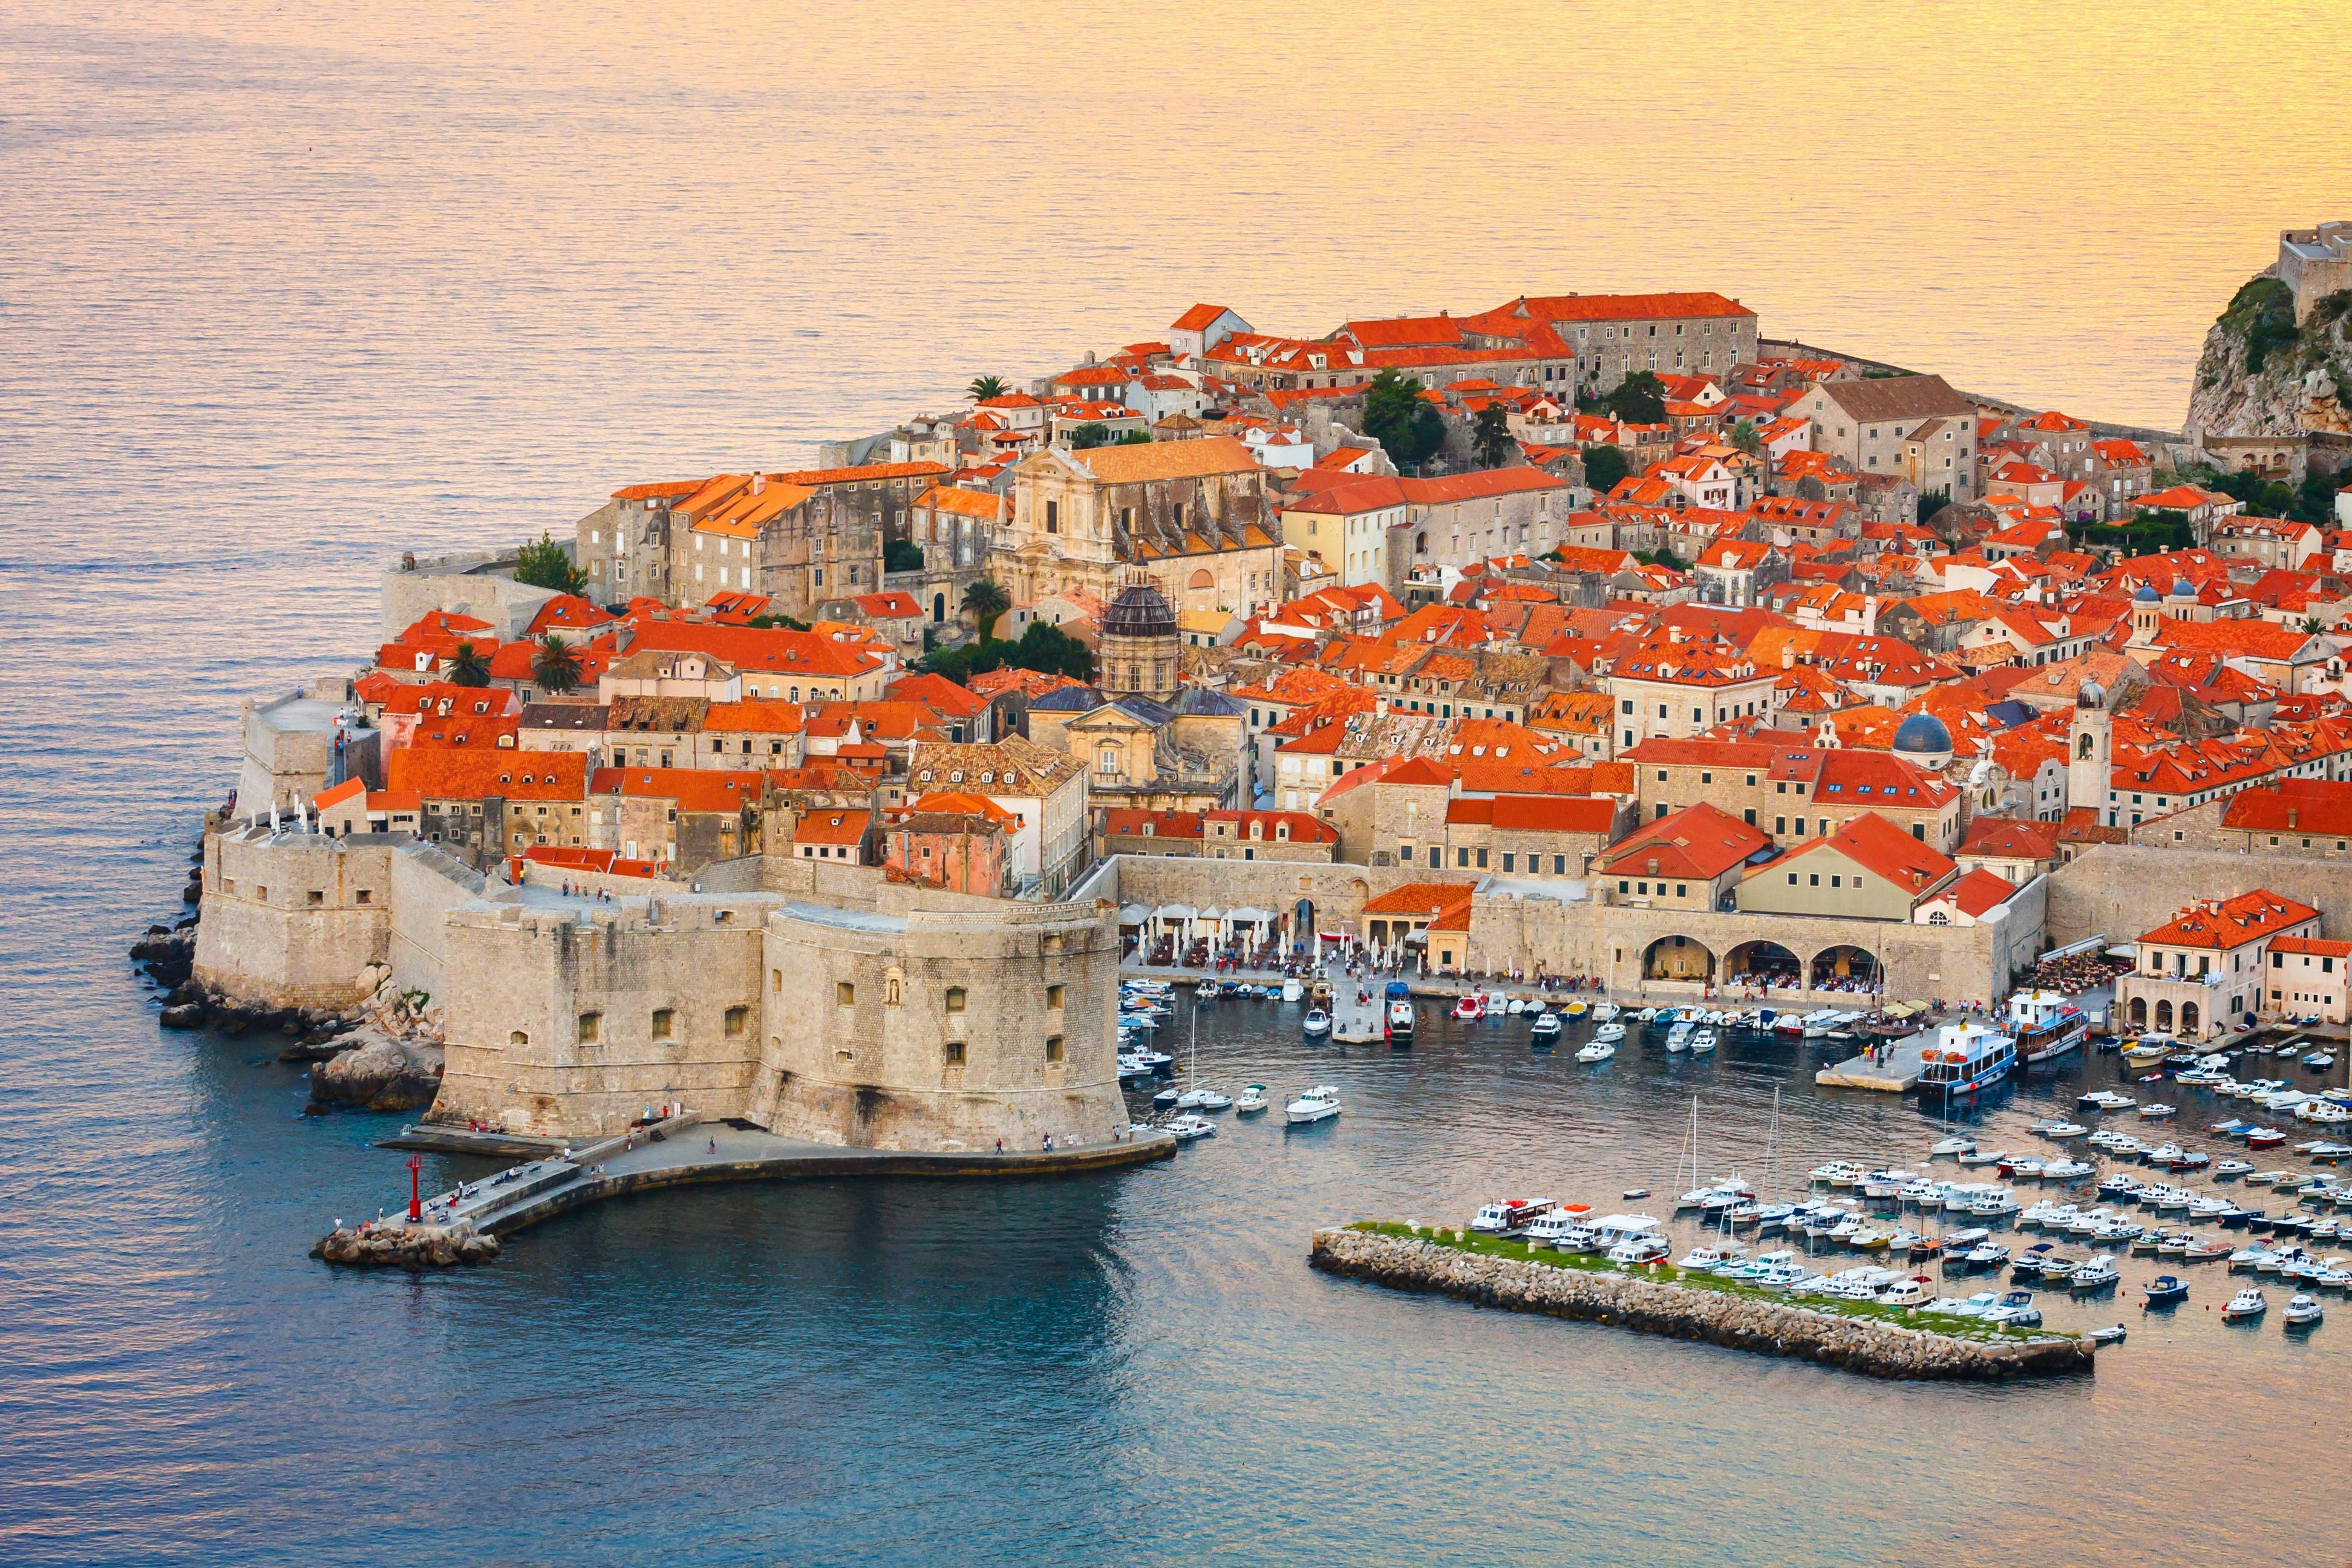 Wandeltour door Dubrovnik met transfer vanuit Budva